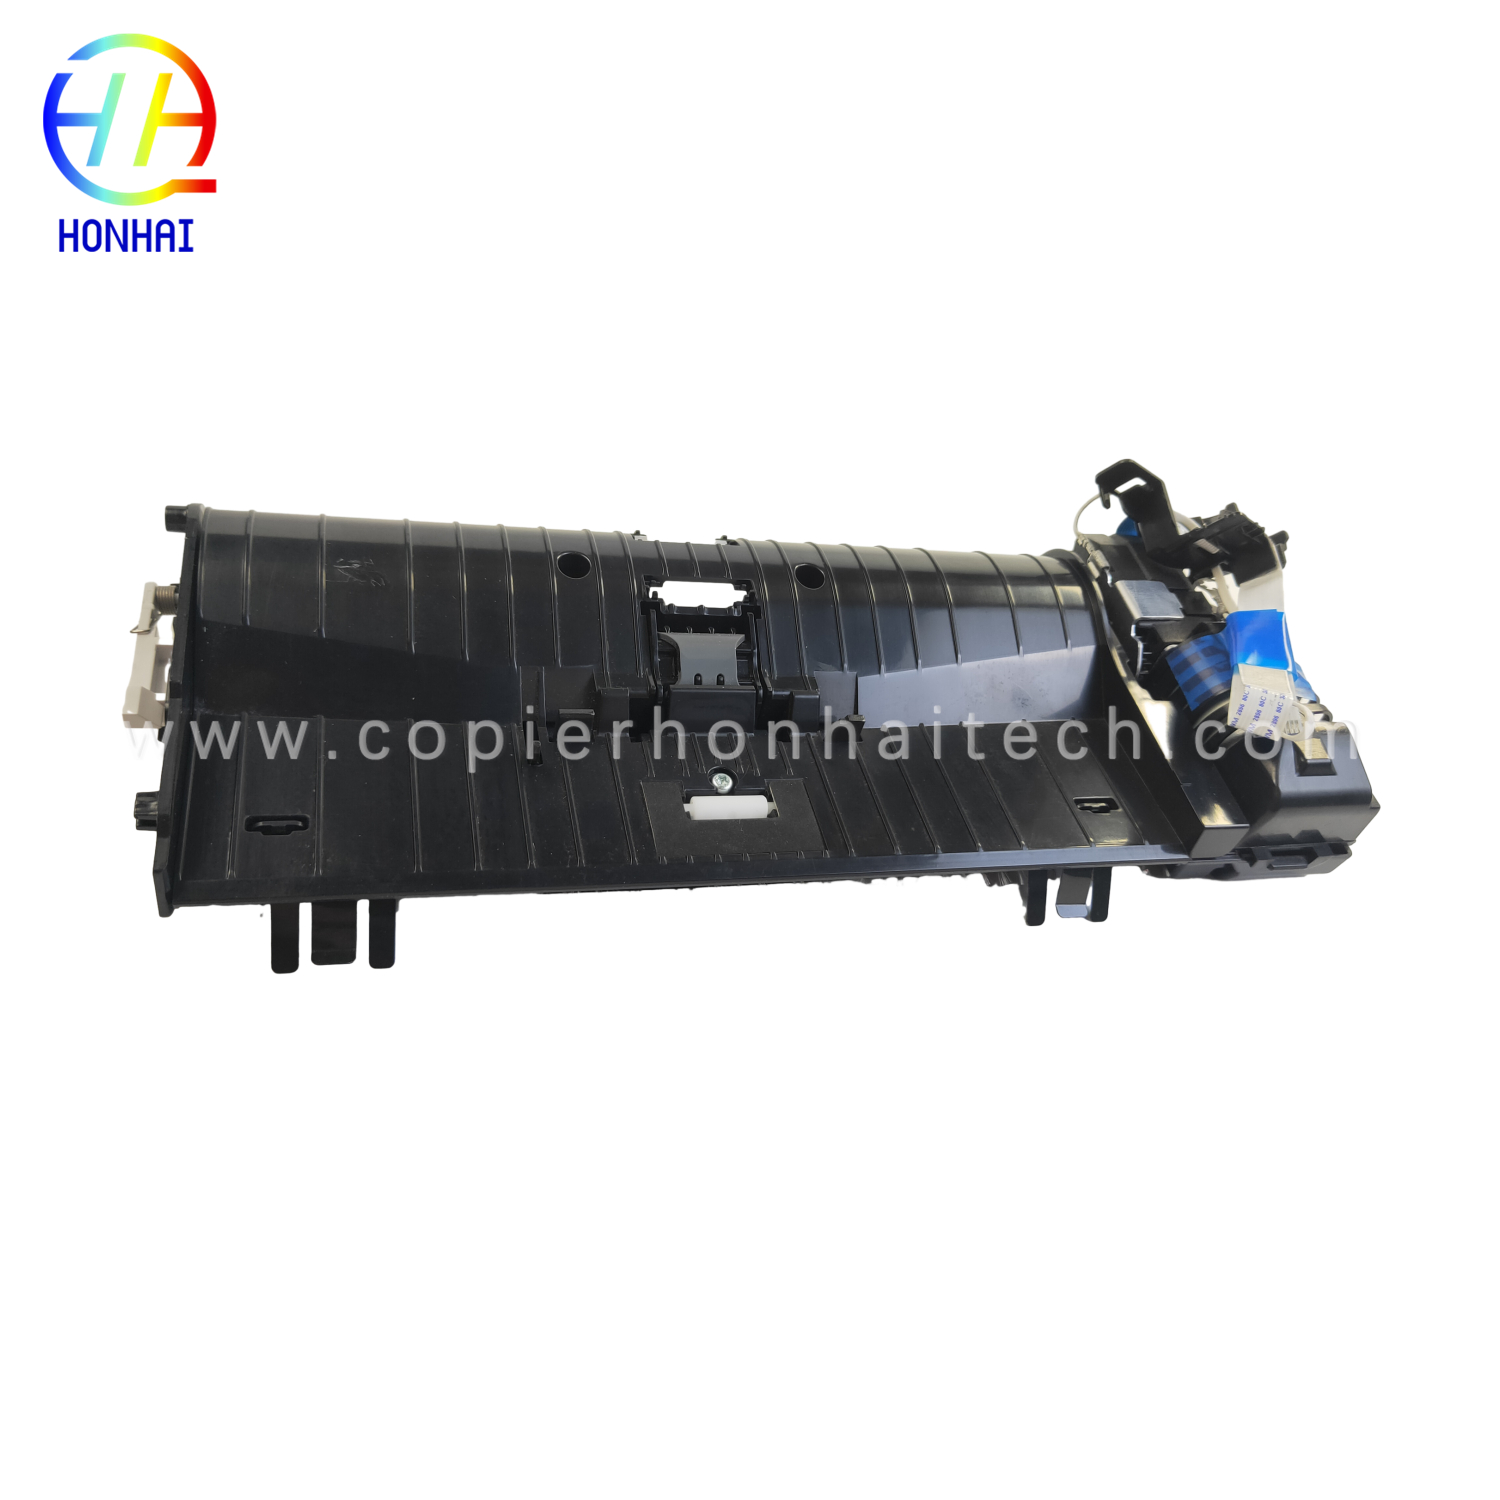 https://www.copierhonhaitech.com/original-adf-assembly-for-hp-color-laserjet-m277-product/